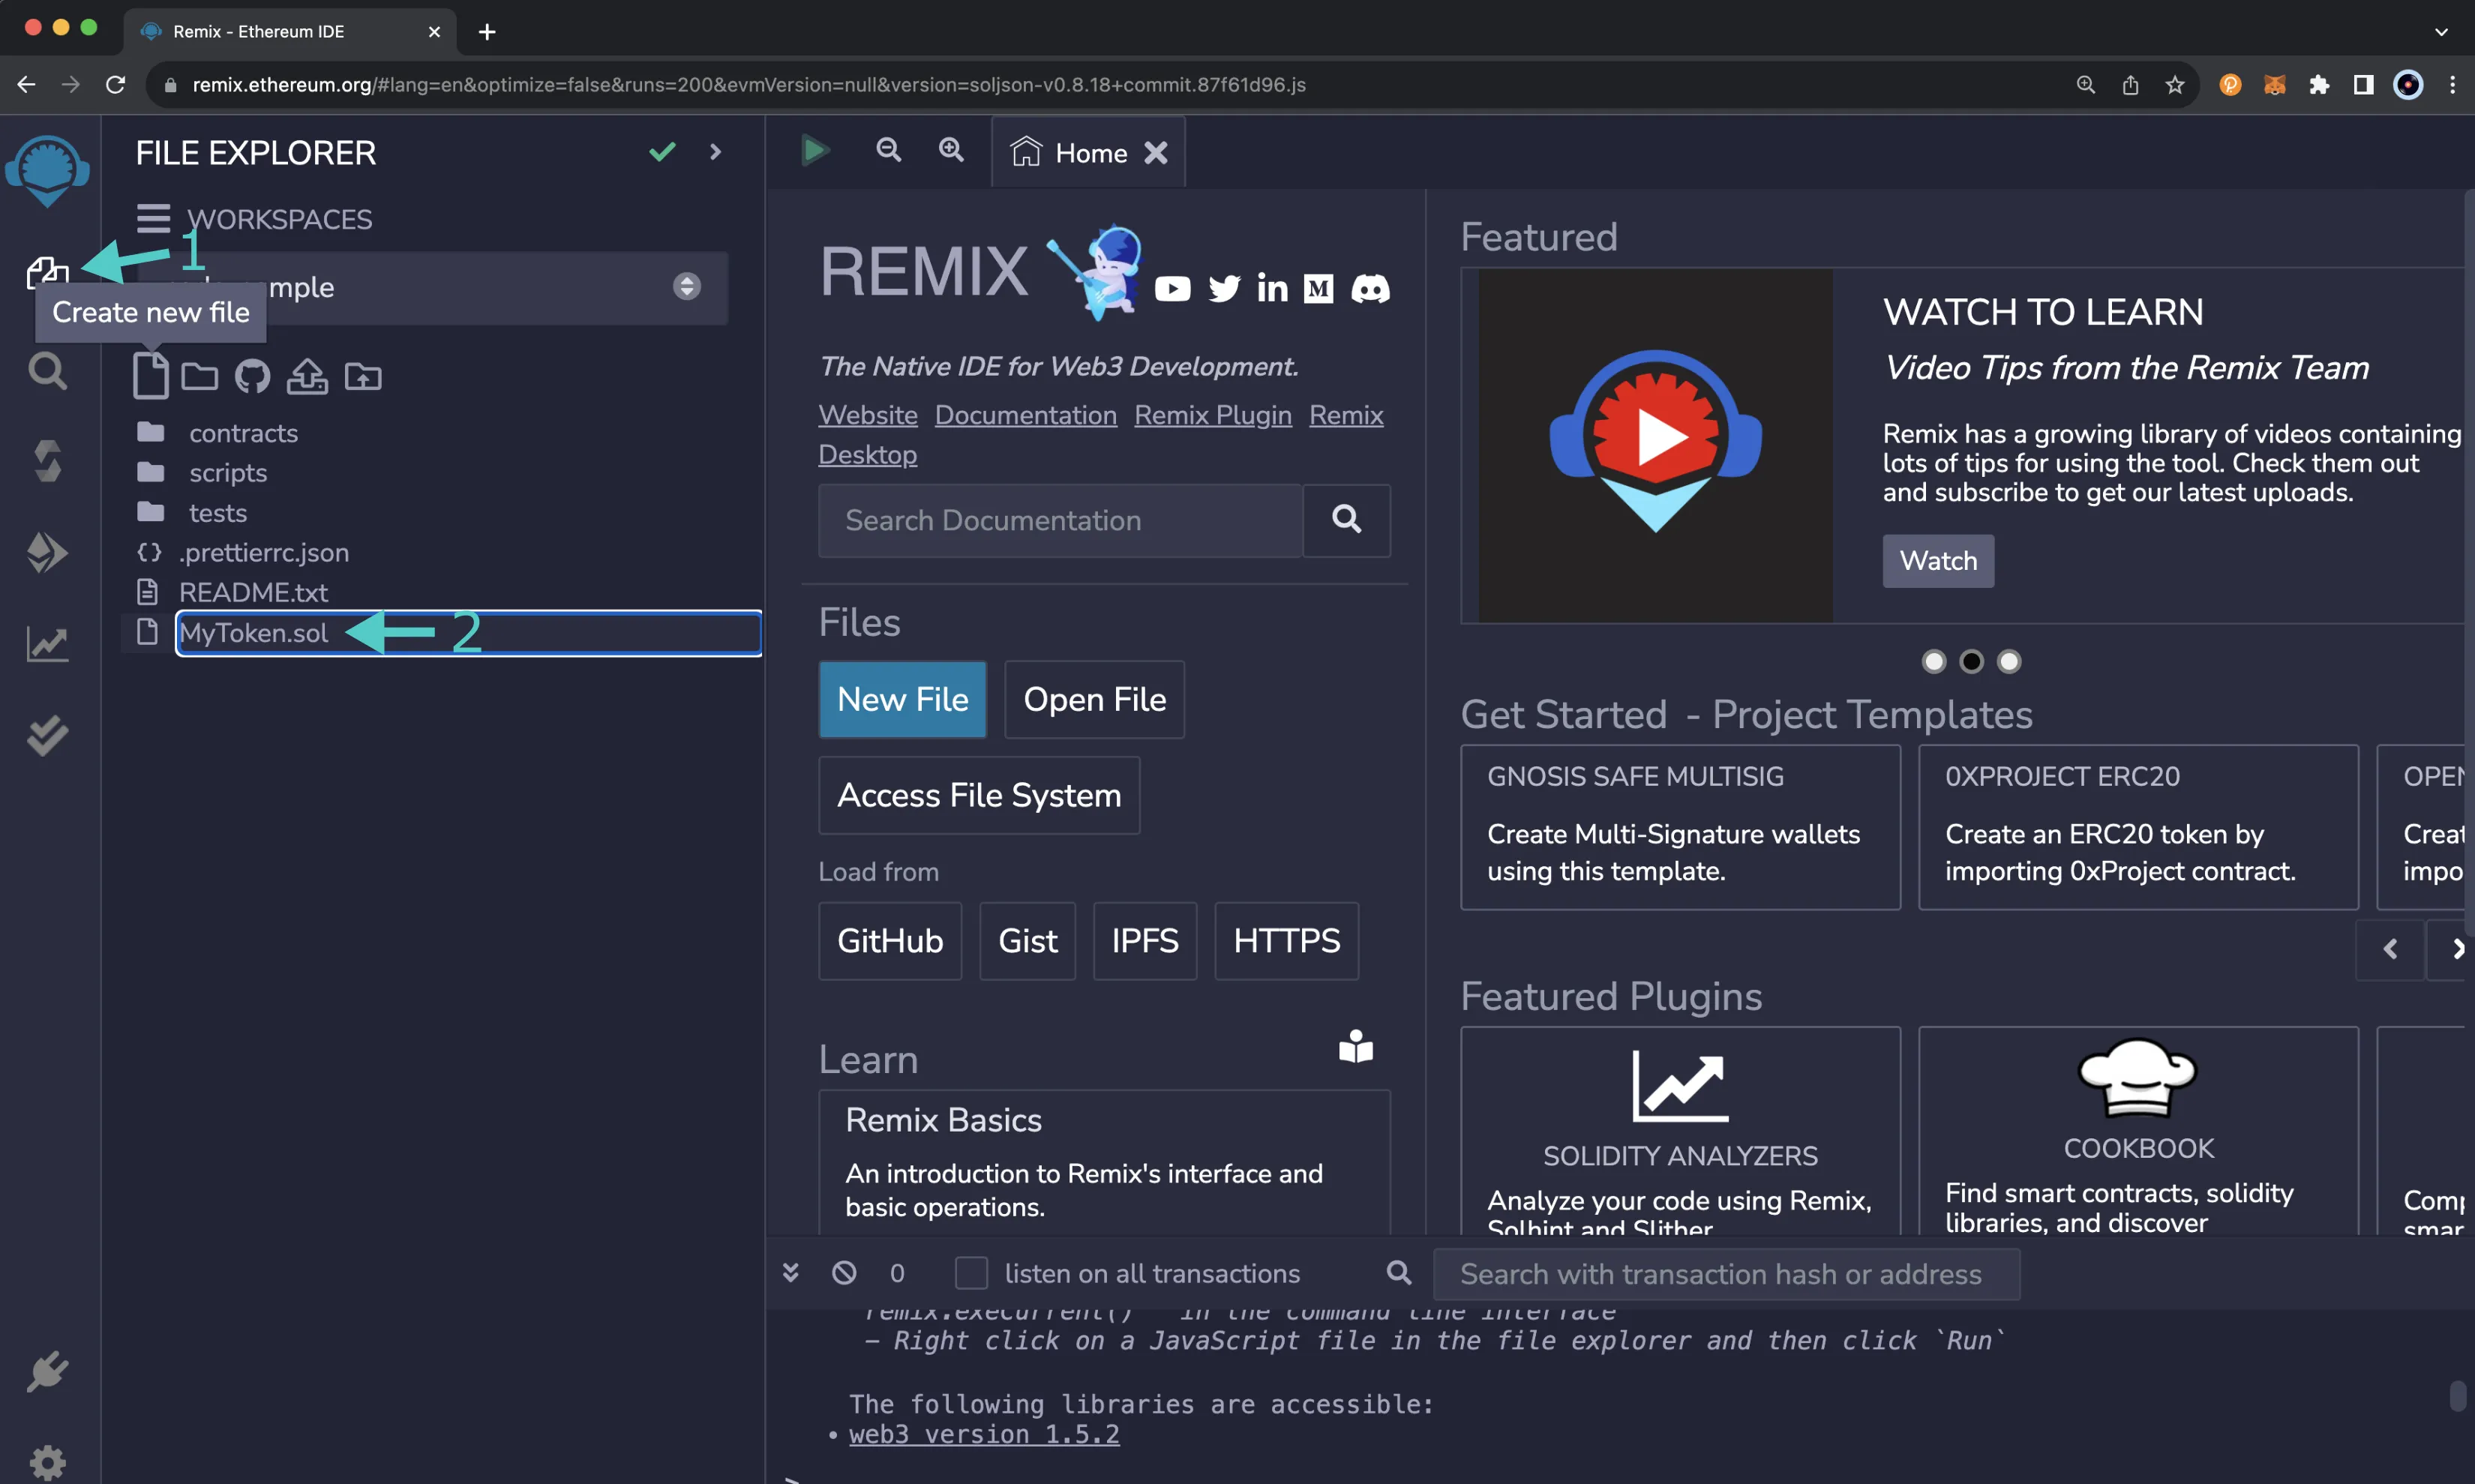 Create a new file using the File explorer plugin in Remix.